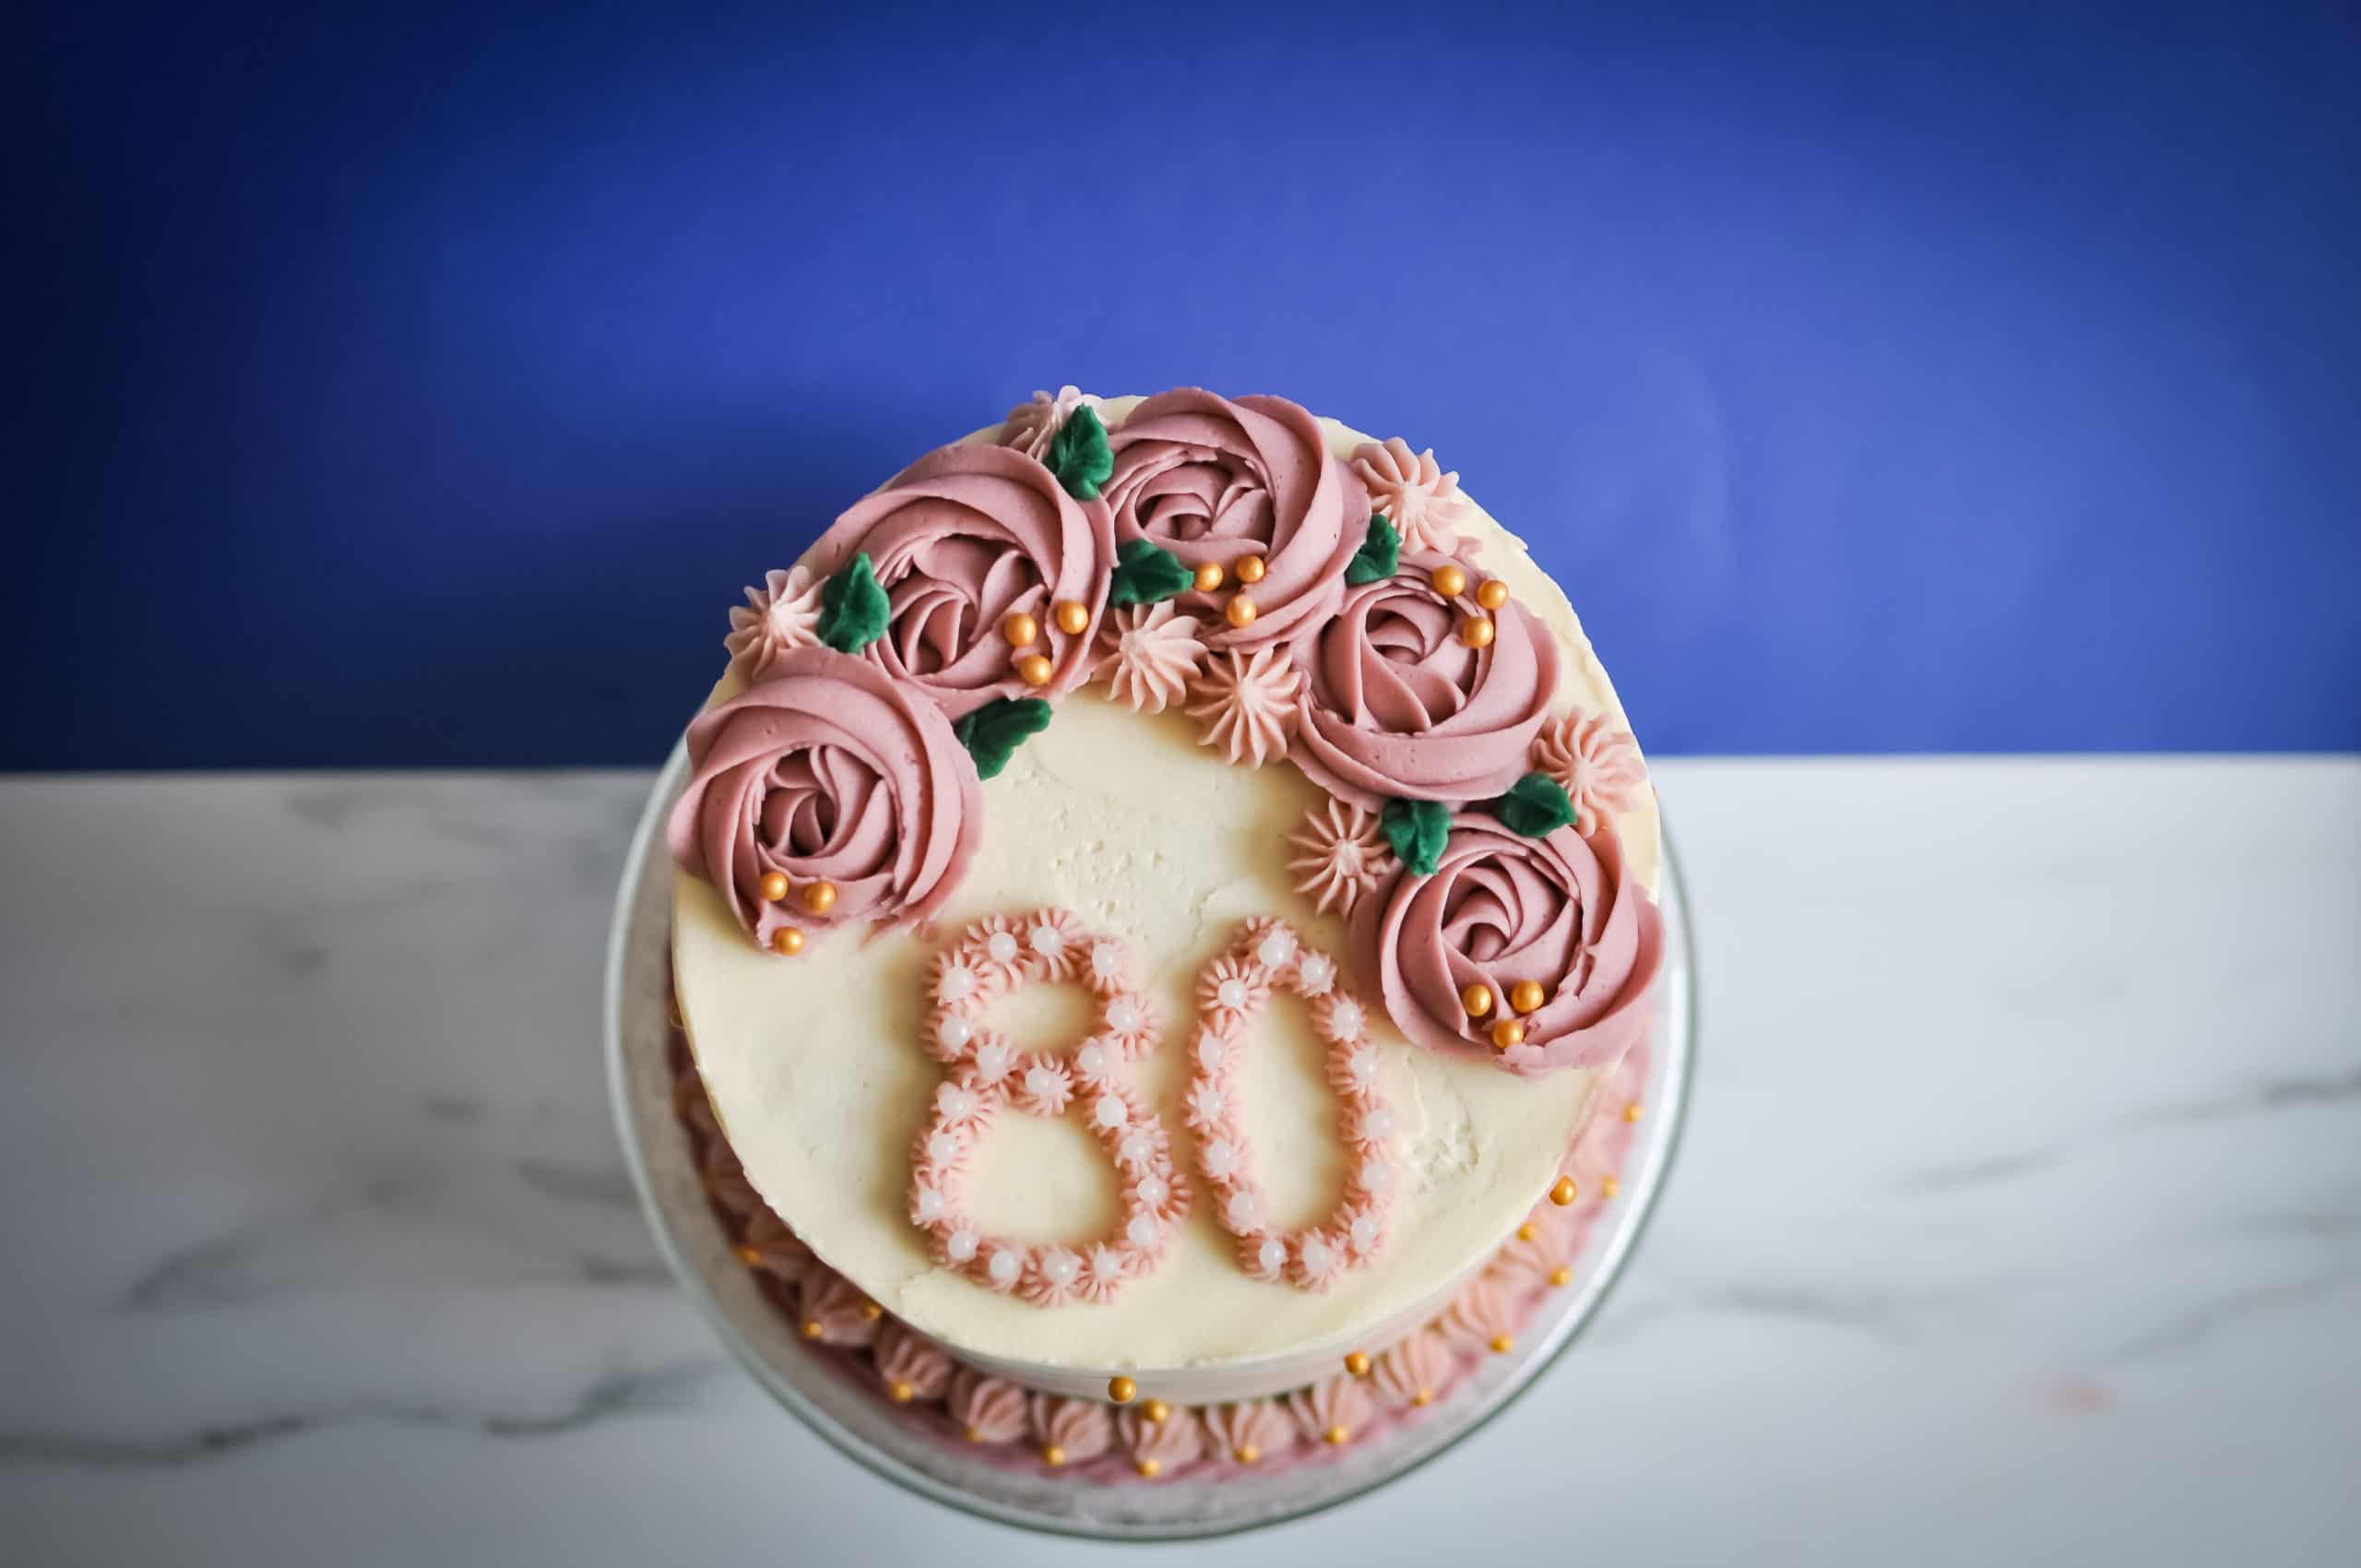 Custom Bespoke Birthday Cake Gallery Image